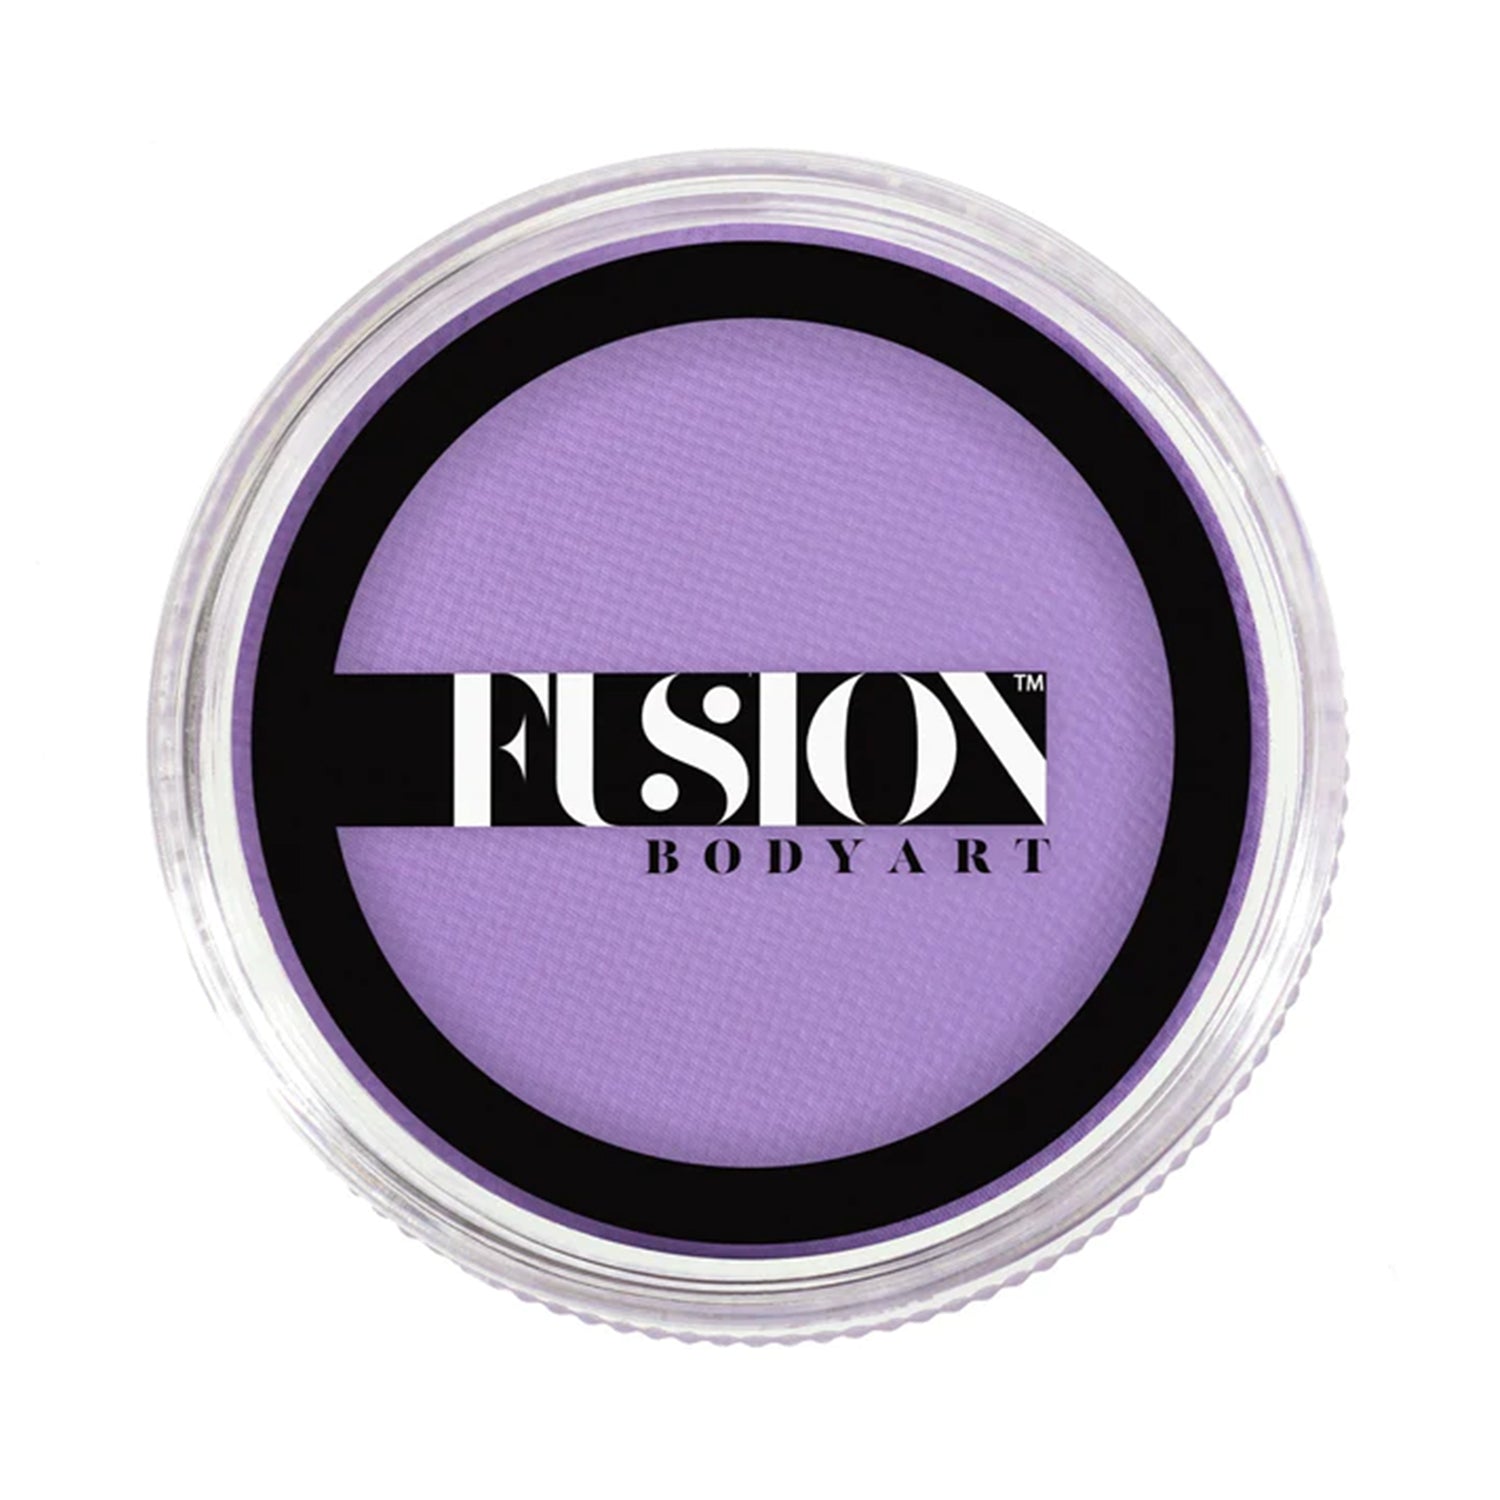 Fusion Body Art Face & Body Paint - Prime Pastel Purple (32 gm)